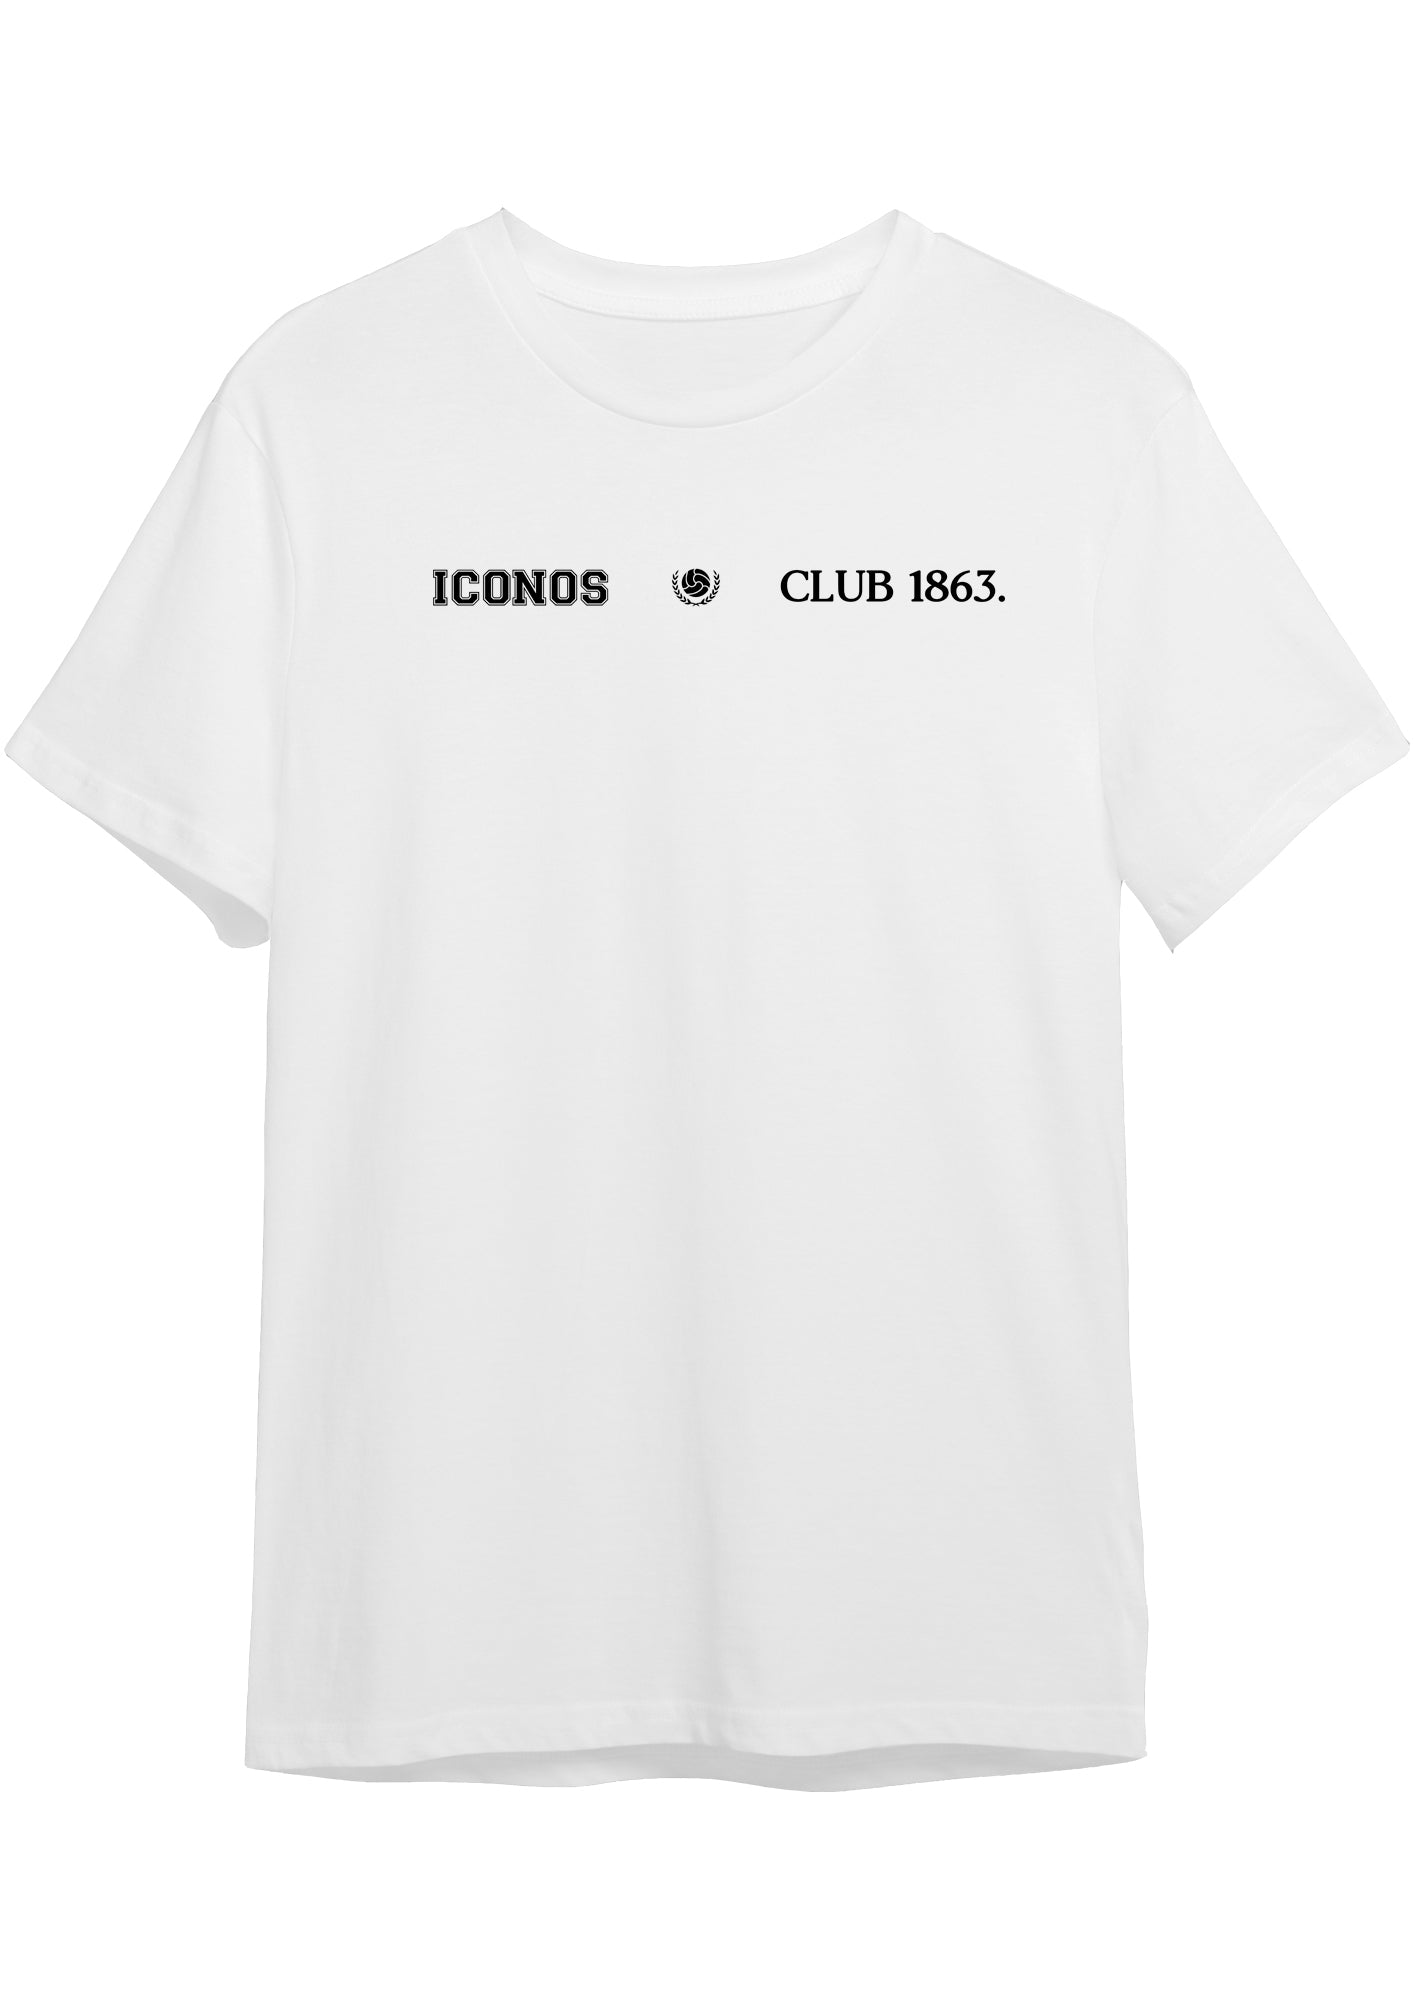 Johan Cruyff "CRUYFF" T-shirt